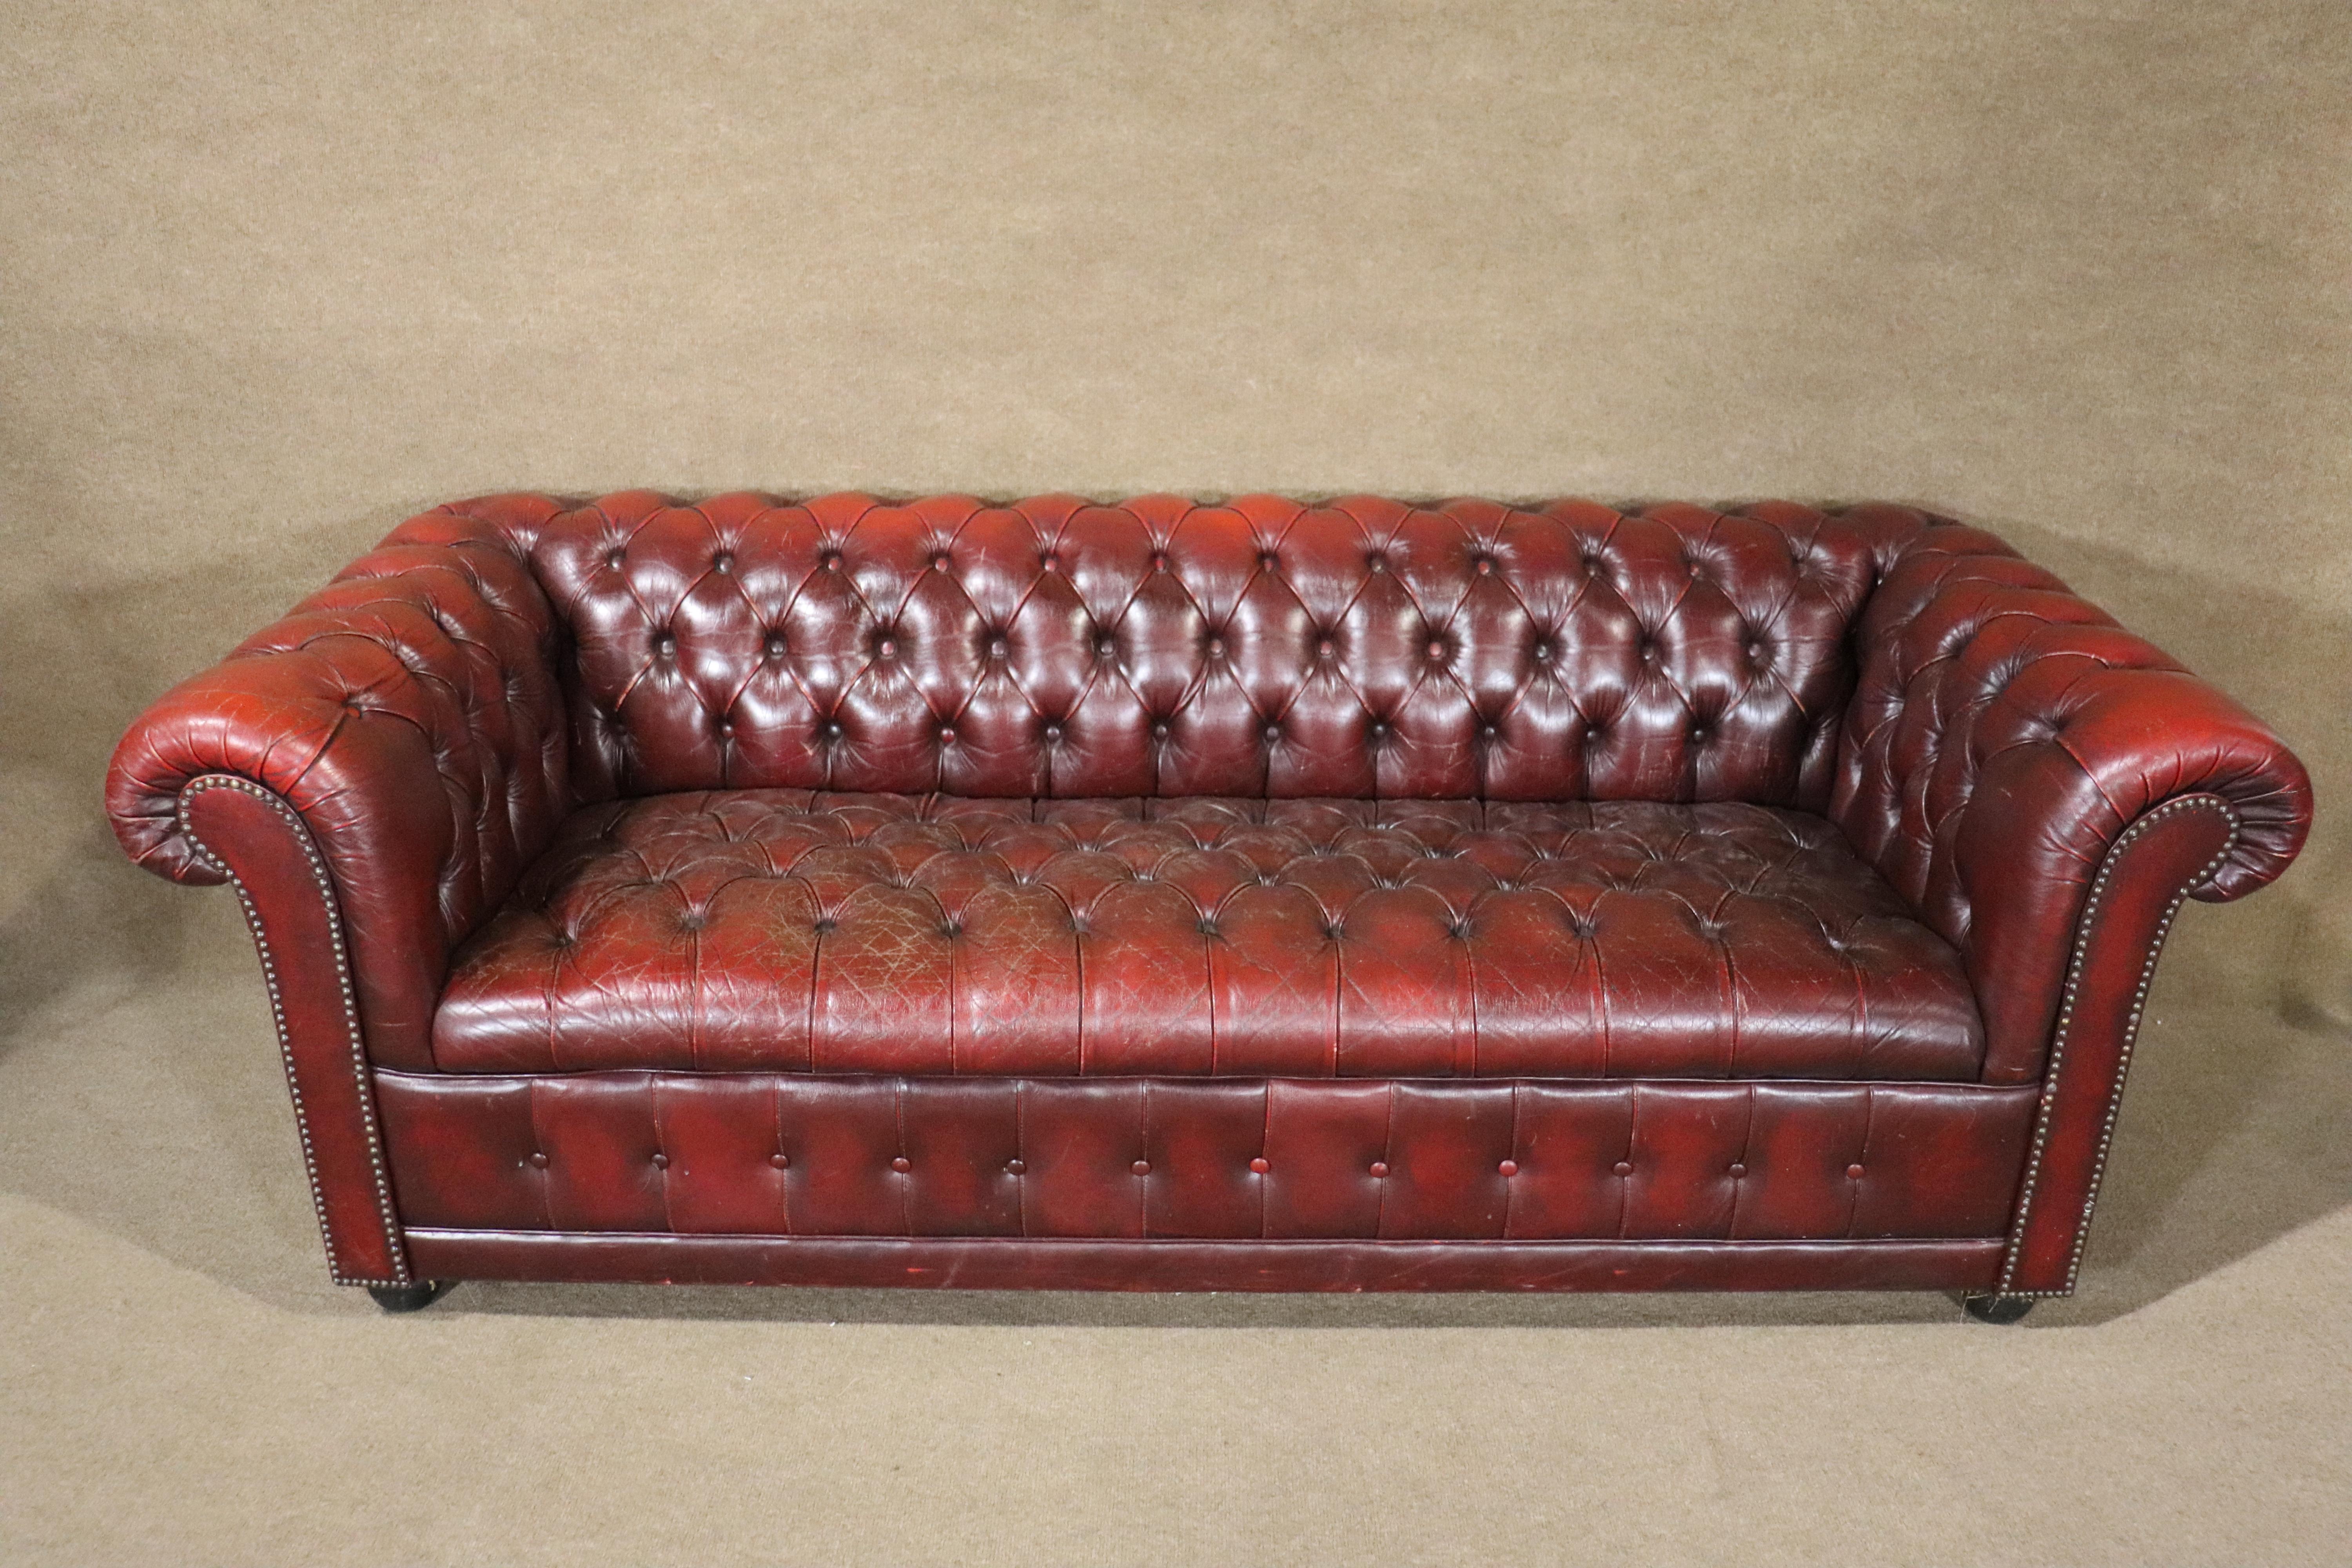 Langes 6+ Fuß getuftetes Sofa in tief burgunderrotem Leder. Großes Alter und Abnutzung durchgehend.
Bitte bestätigen Sie den Standort NY oder NJ